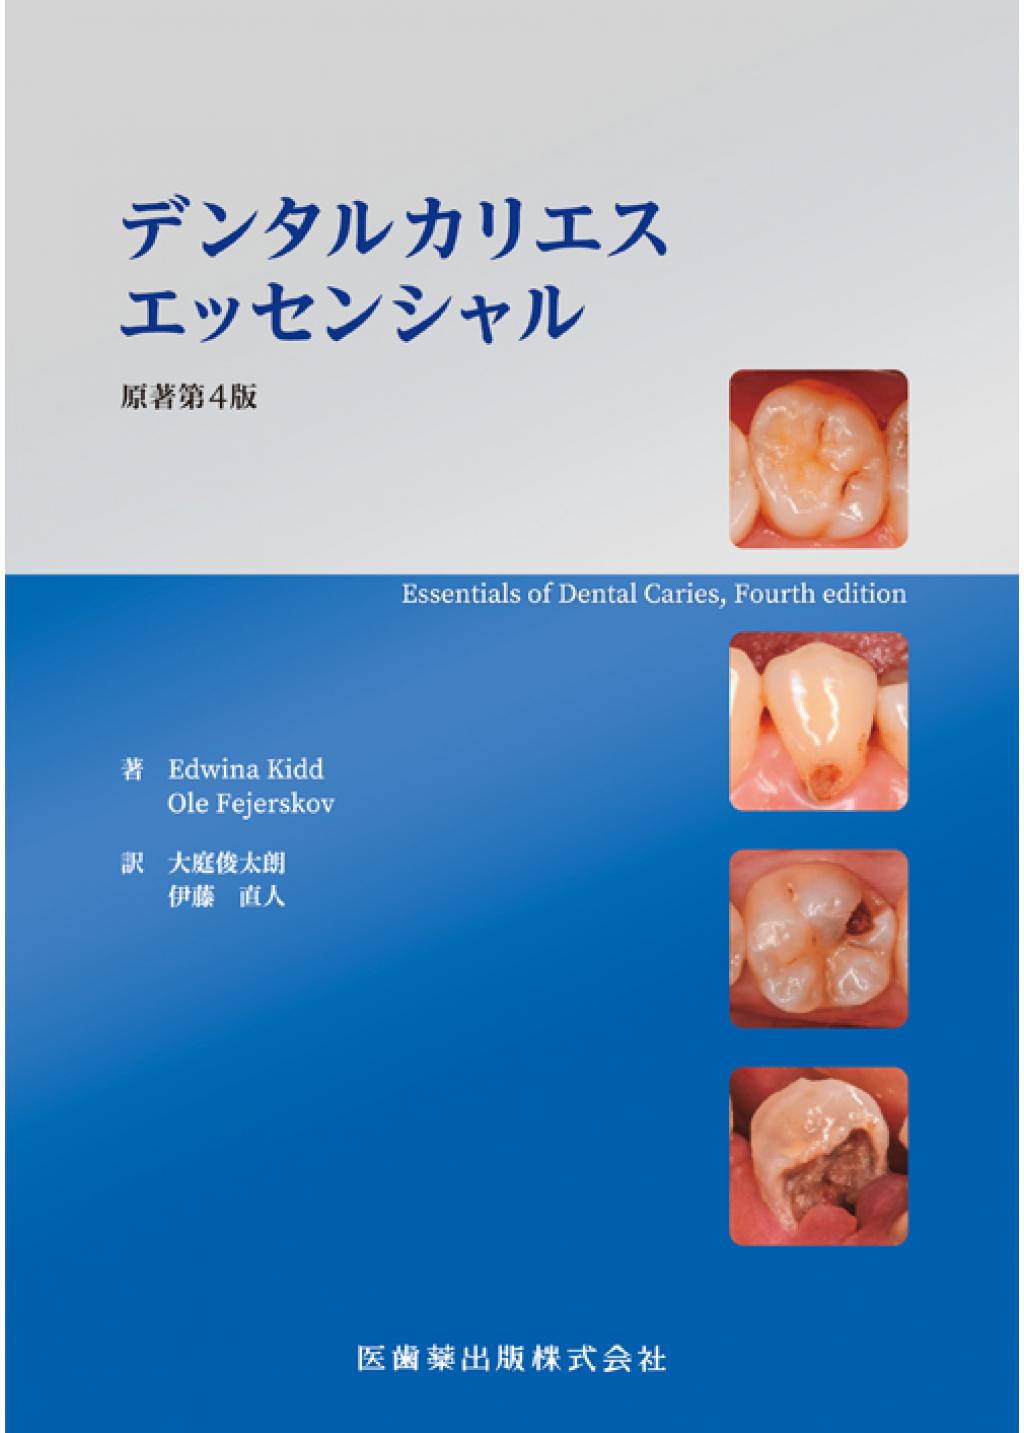 口腔外科学 第4版 医歯薬出版健康・医学 - omegasoft.co.id